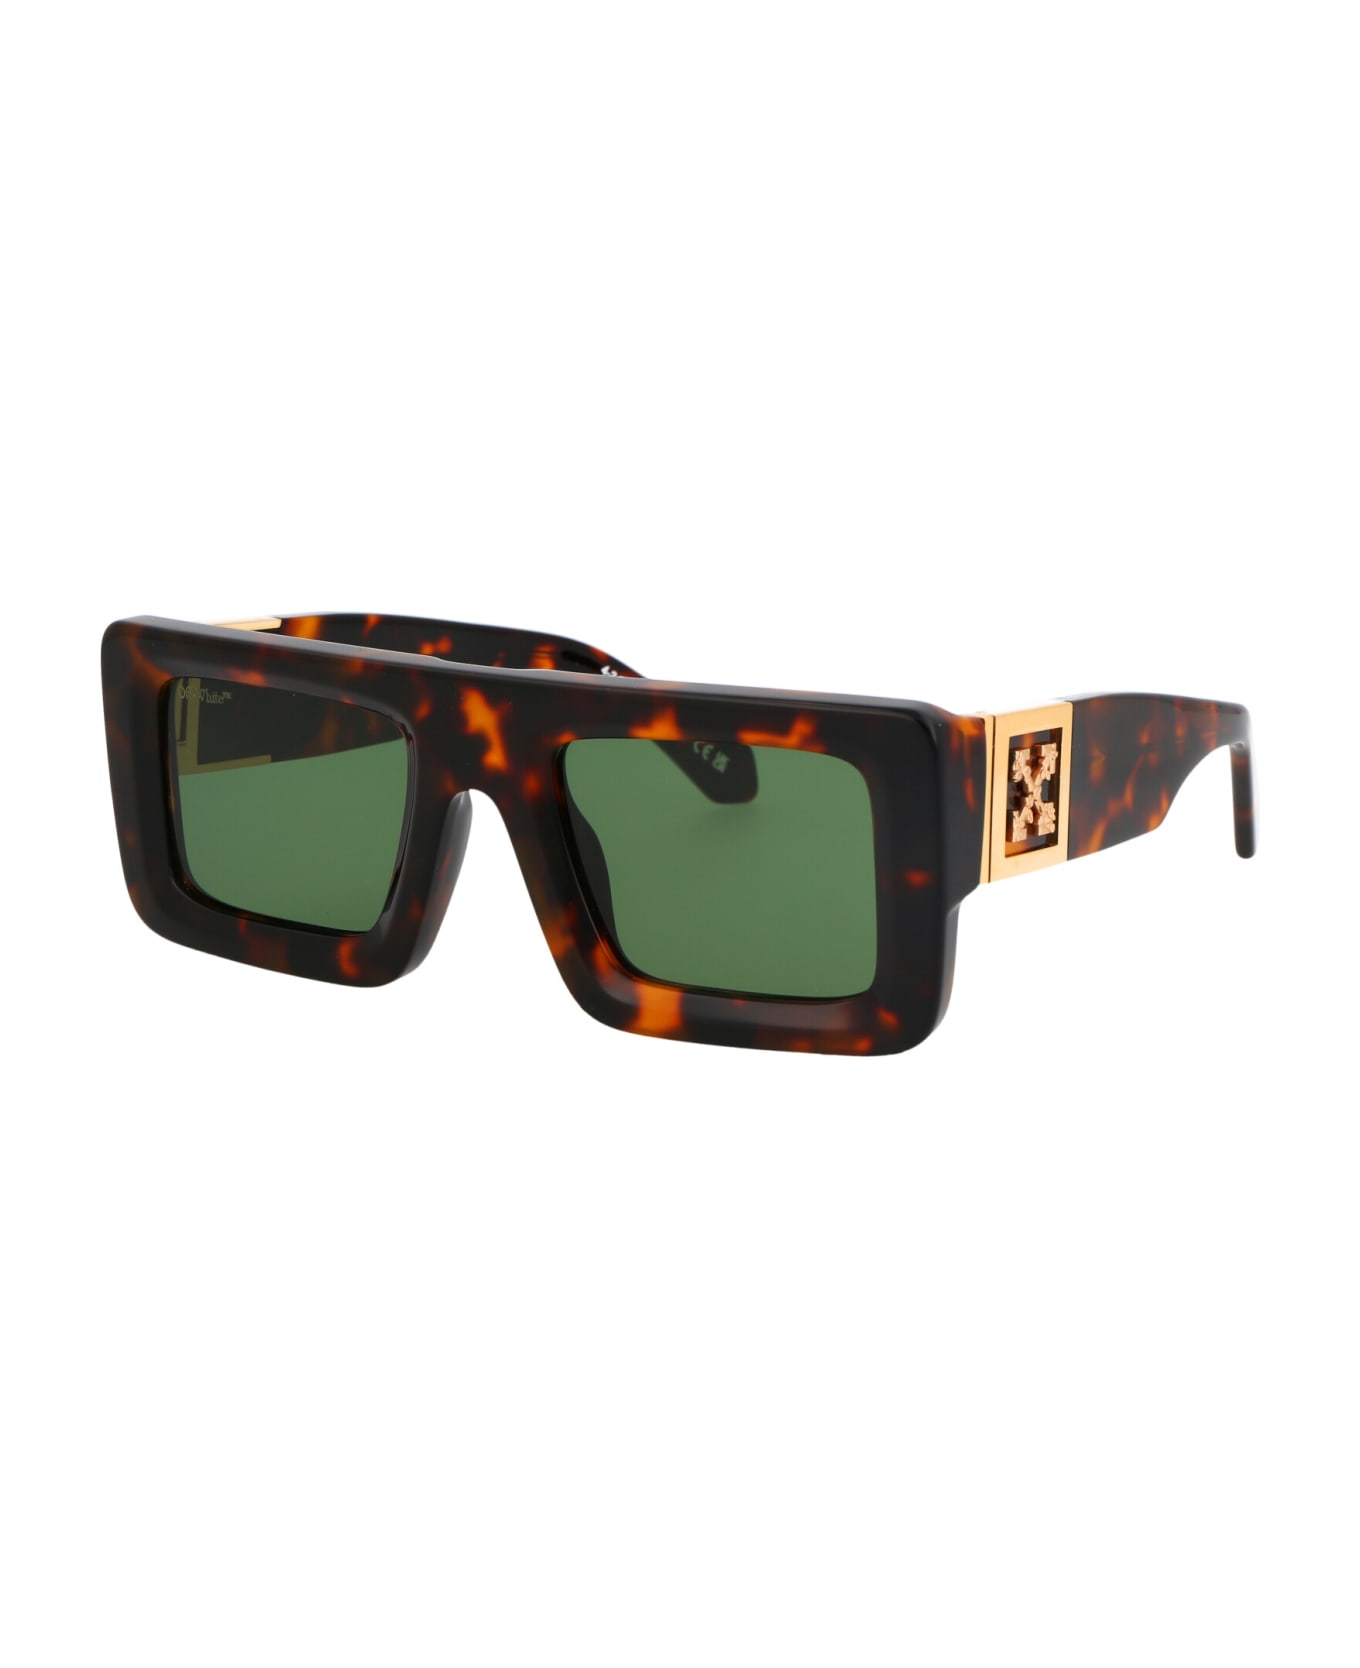 Off-White Leonardo Sunglasses - 6055 HAVANA GREEN